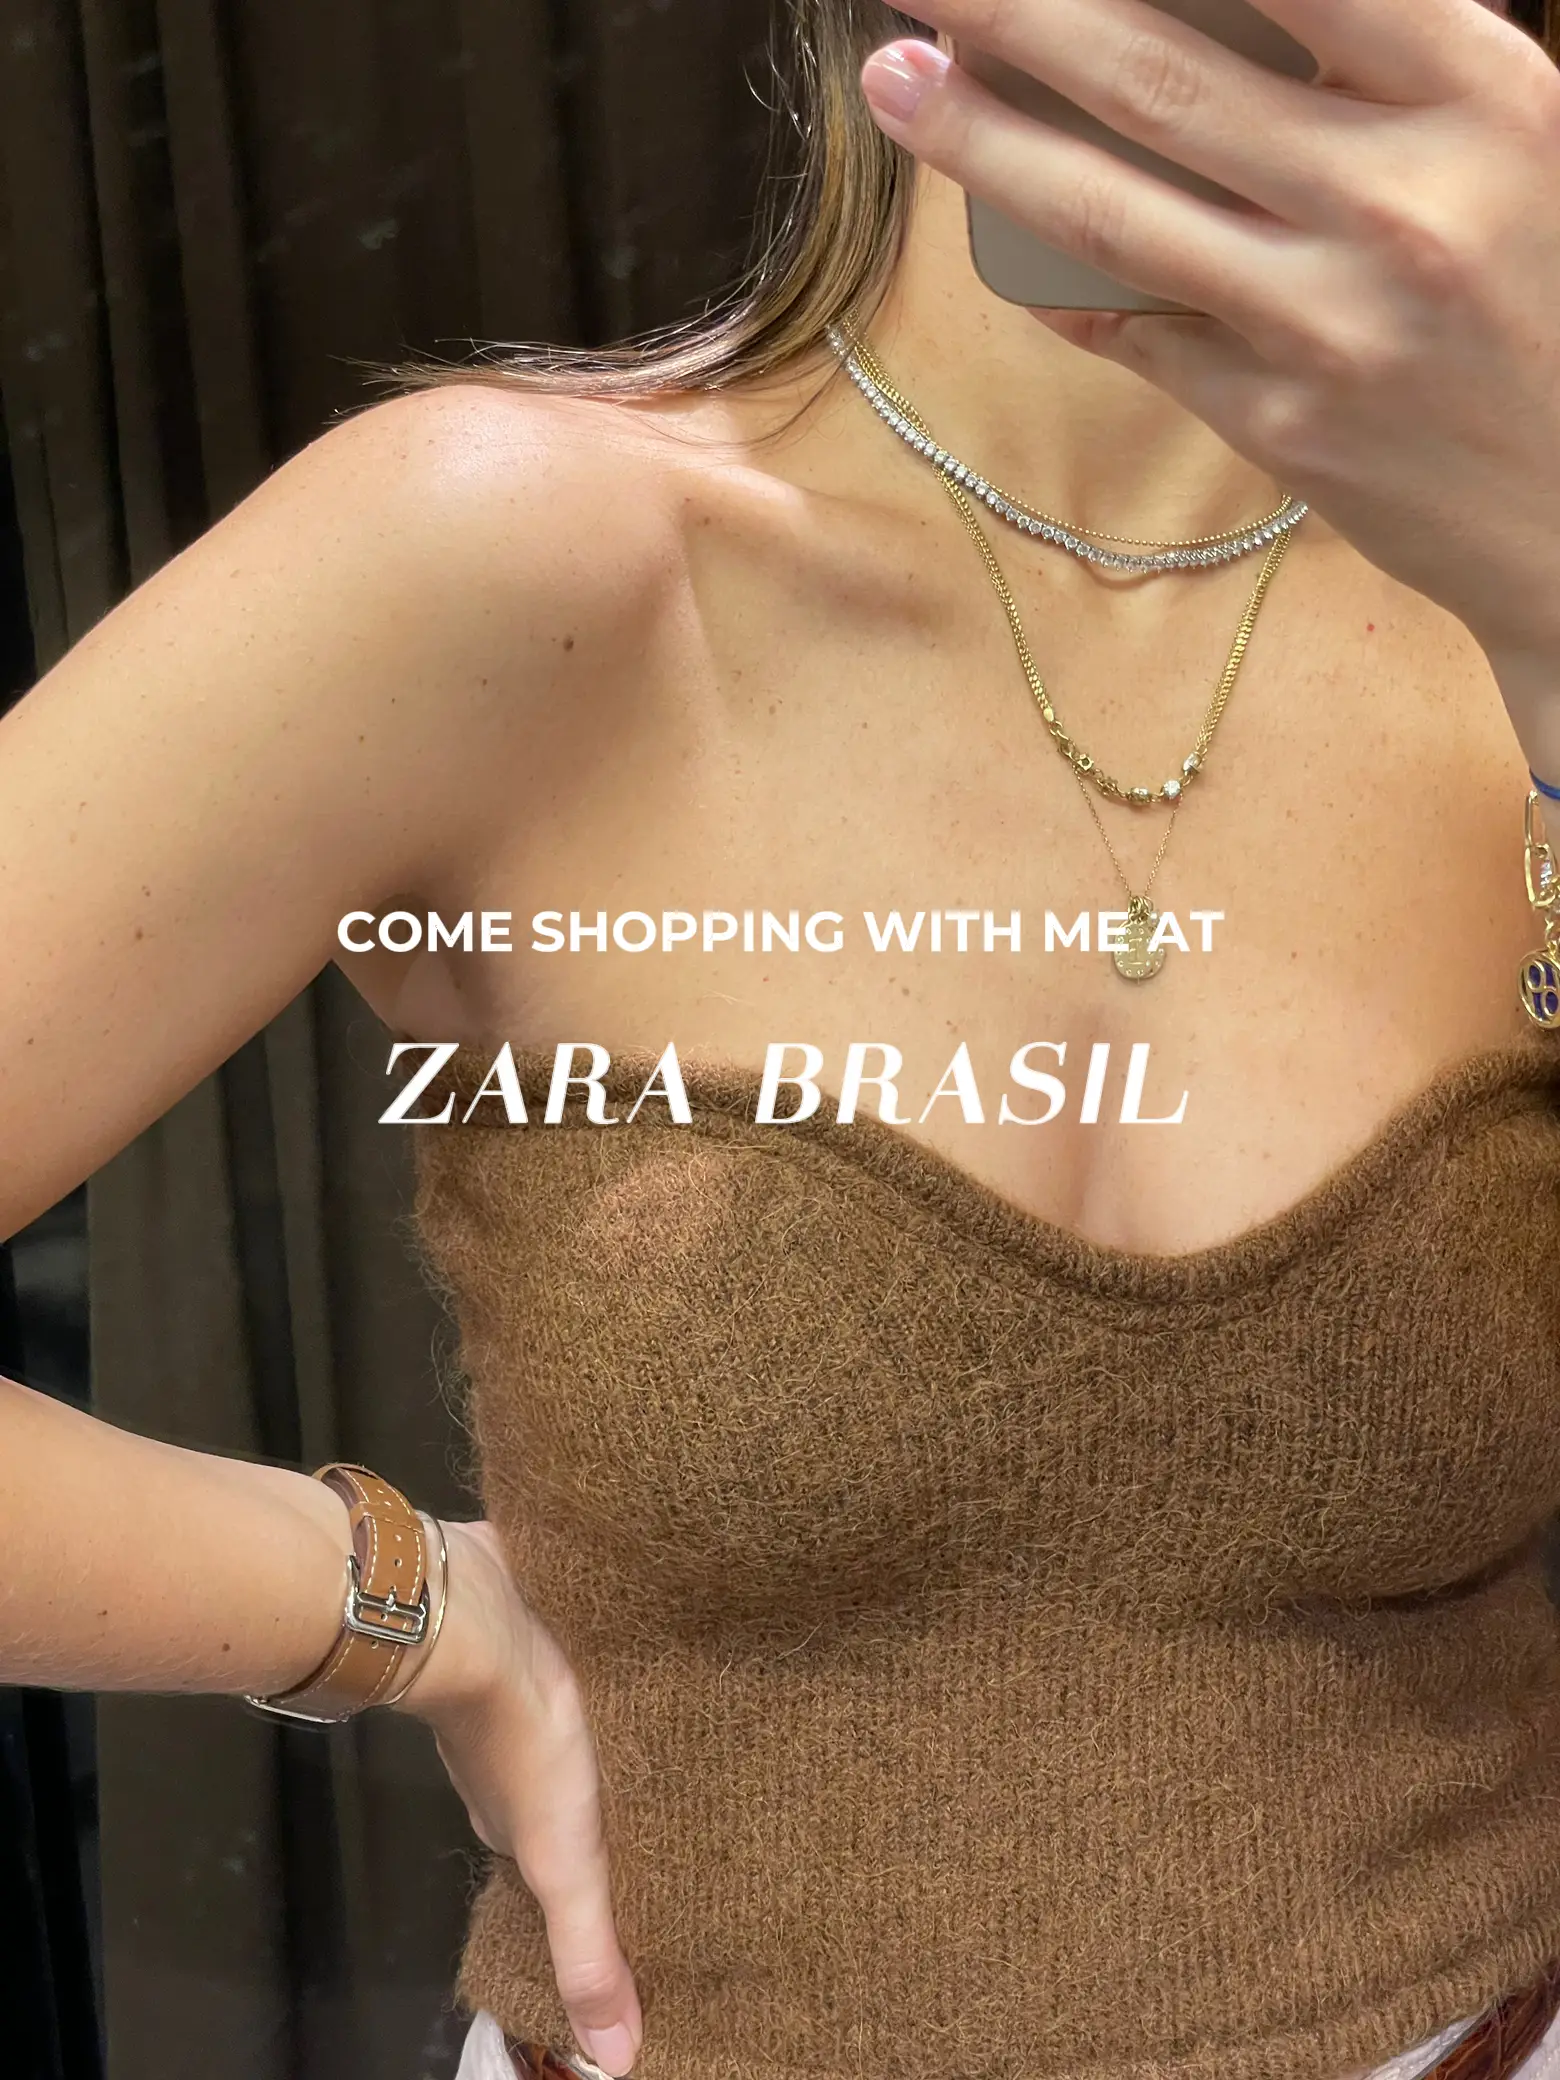 Zara Brasil Haul, Gallery posted by Rosa Zabo